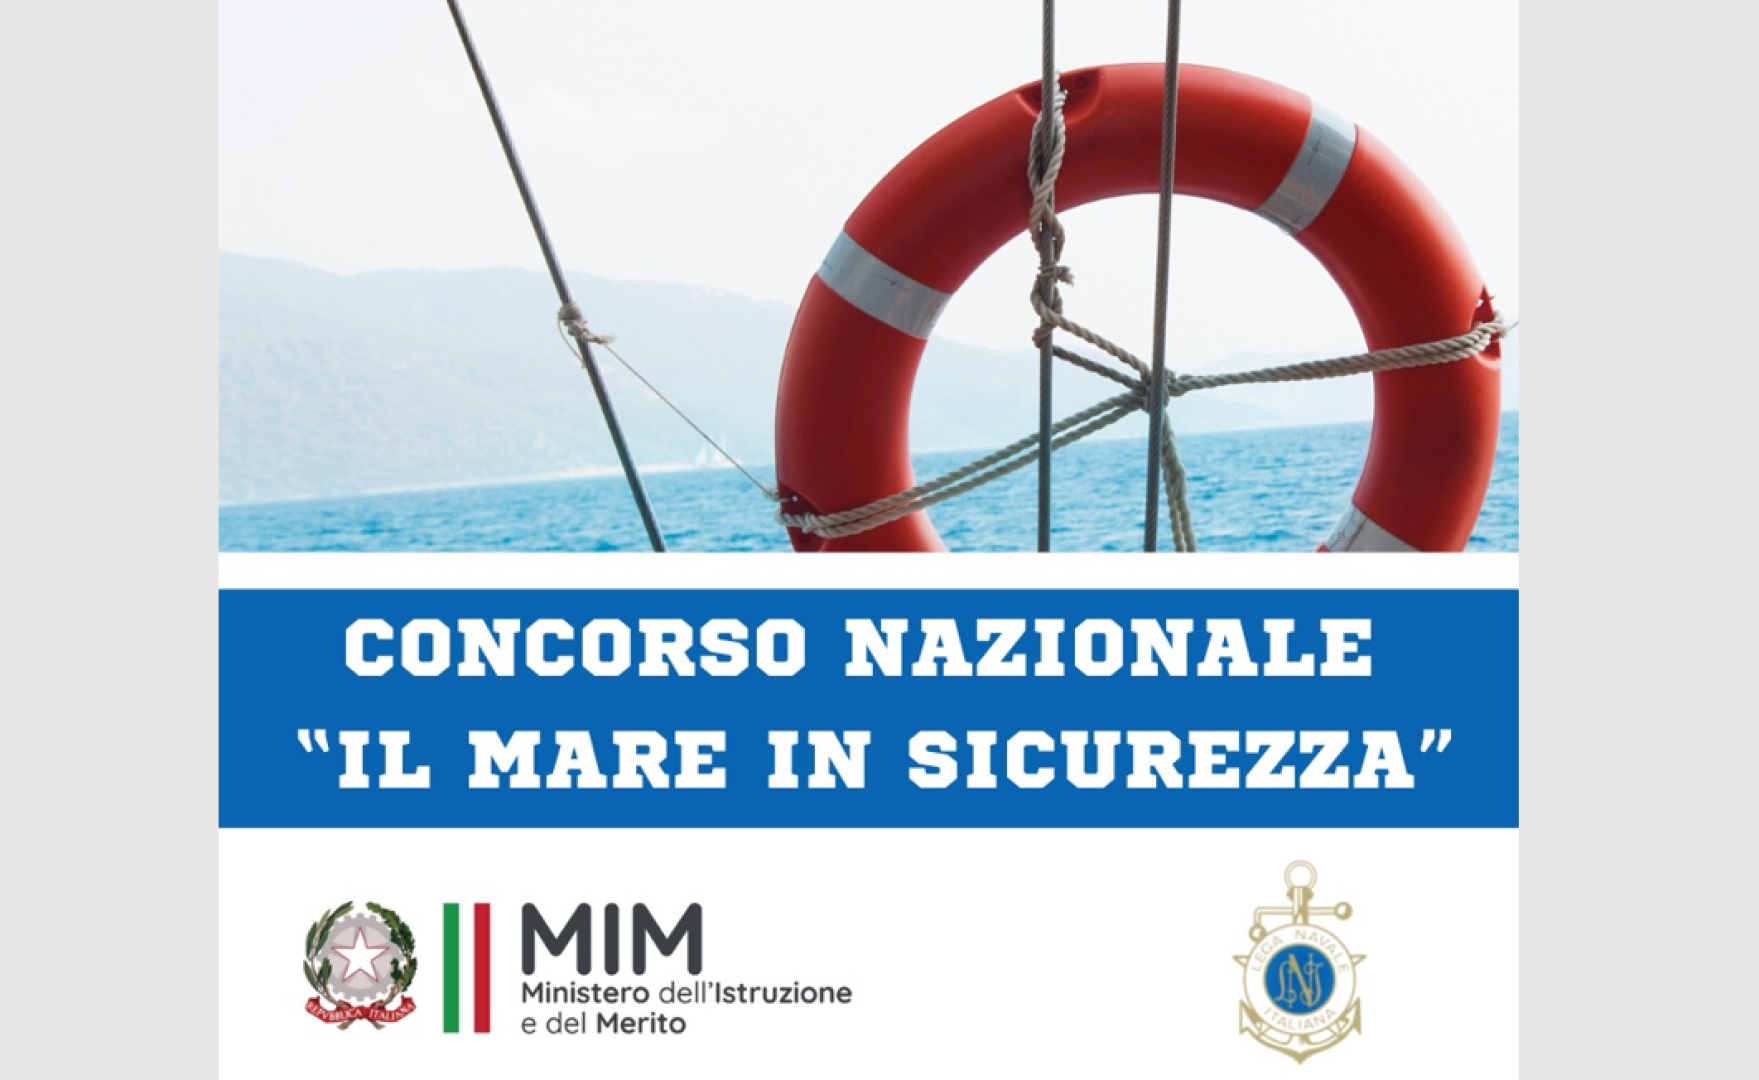 Lega Navale Italiana e Ministero dell’Istruzione e del Merito insieme per il concorso “Il mare in sicurezza”